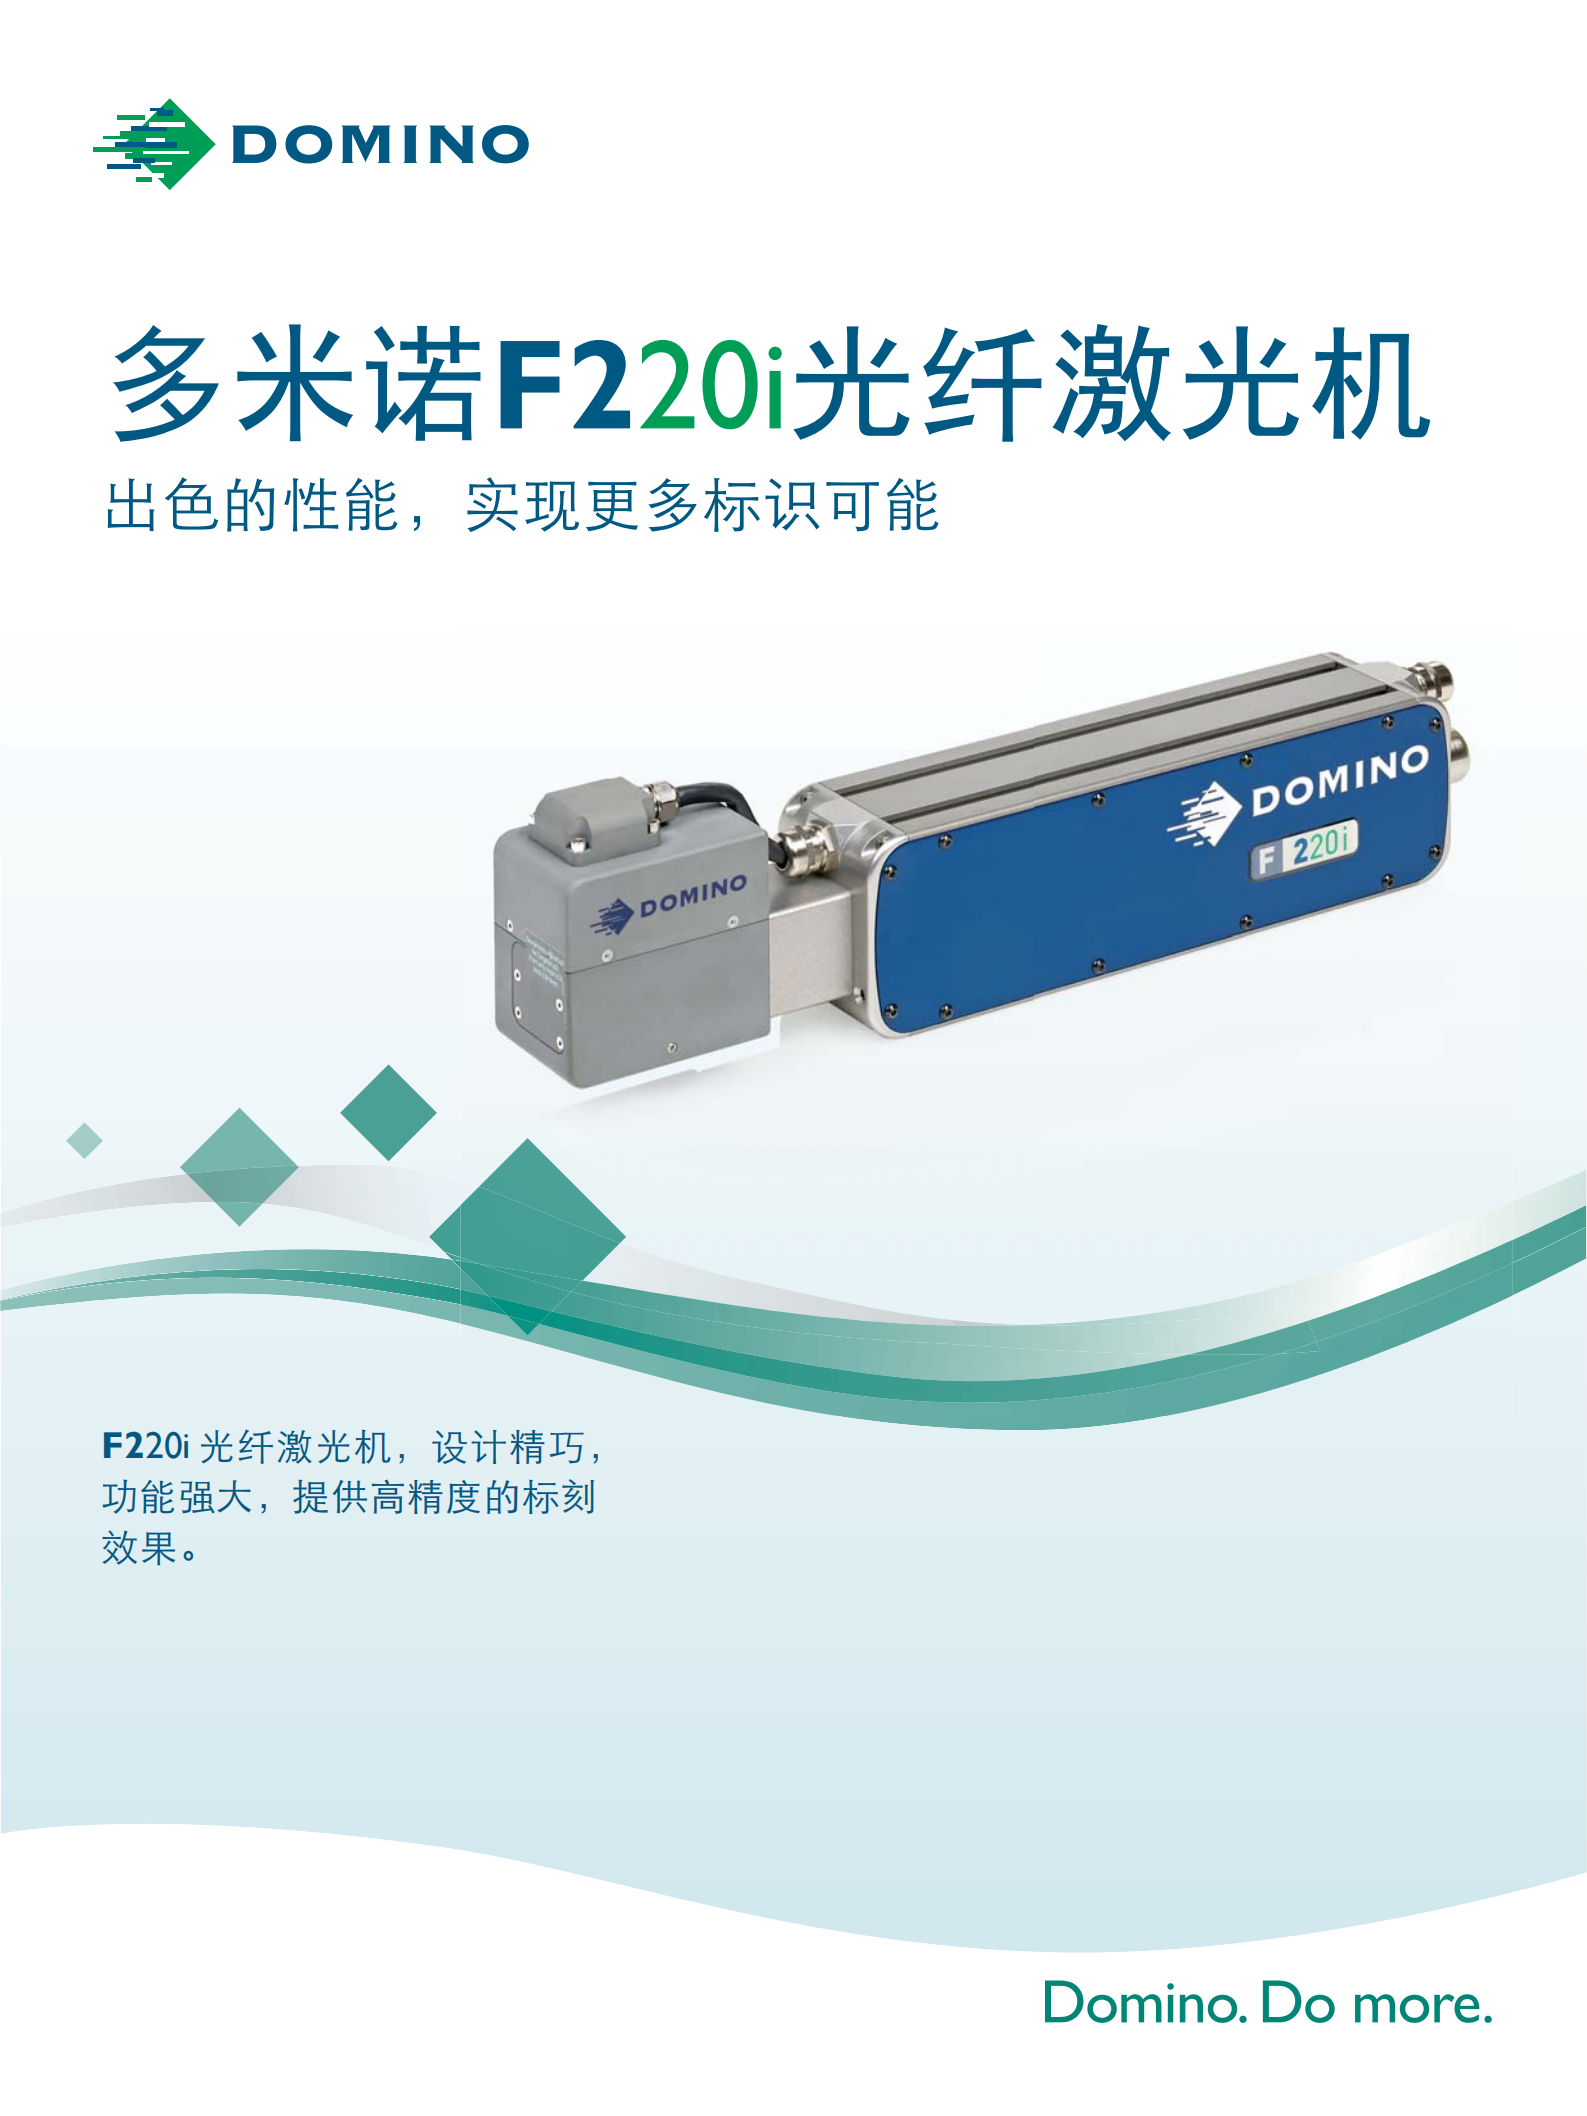 Brochure-CN-F220i_00.png